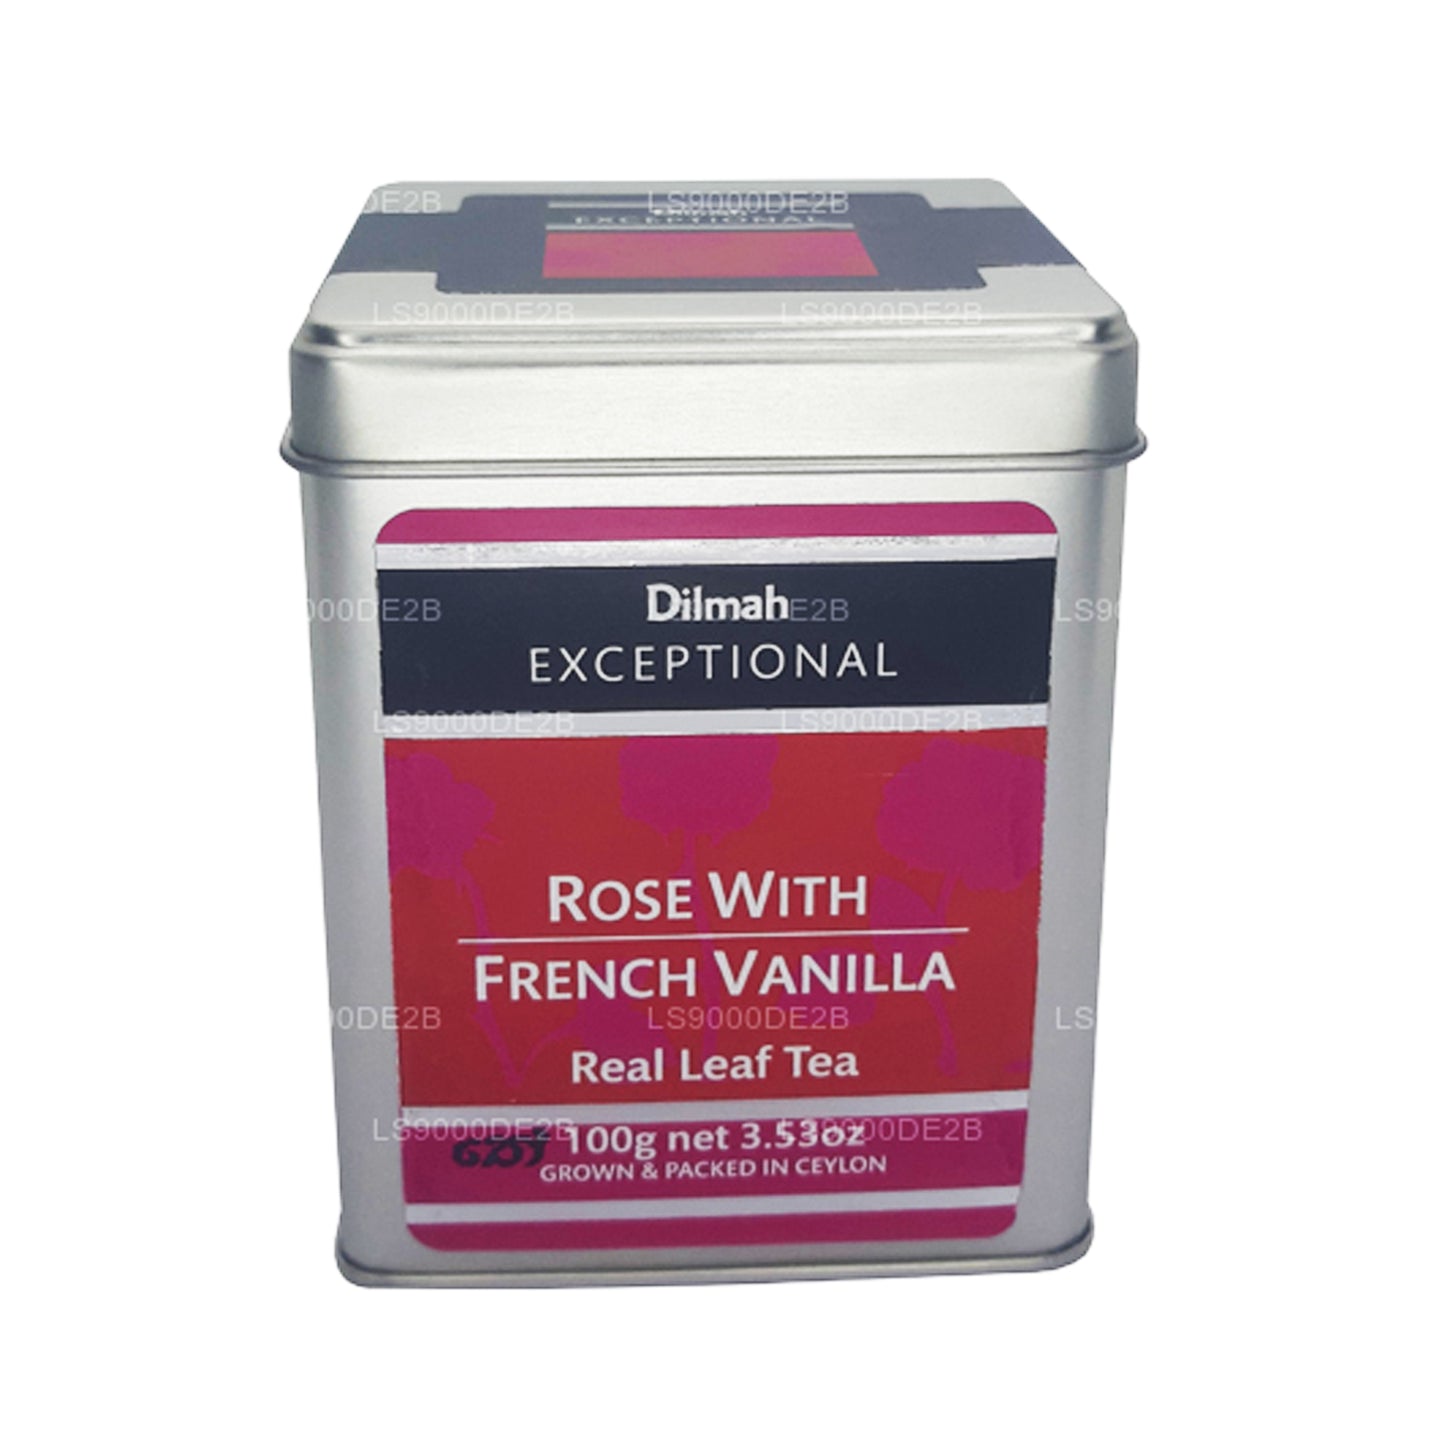 Dilmah Exceptional Rose met Franse vanille thee met echte bladeren (40 g) 20 theezakjes